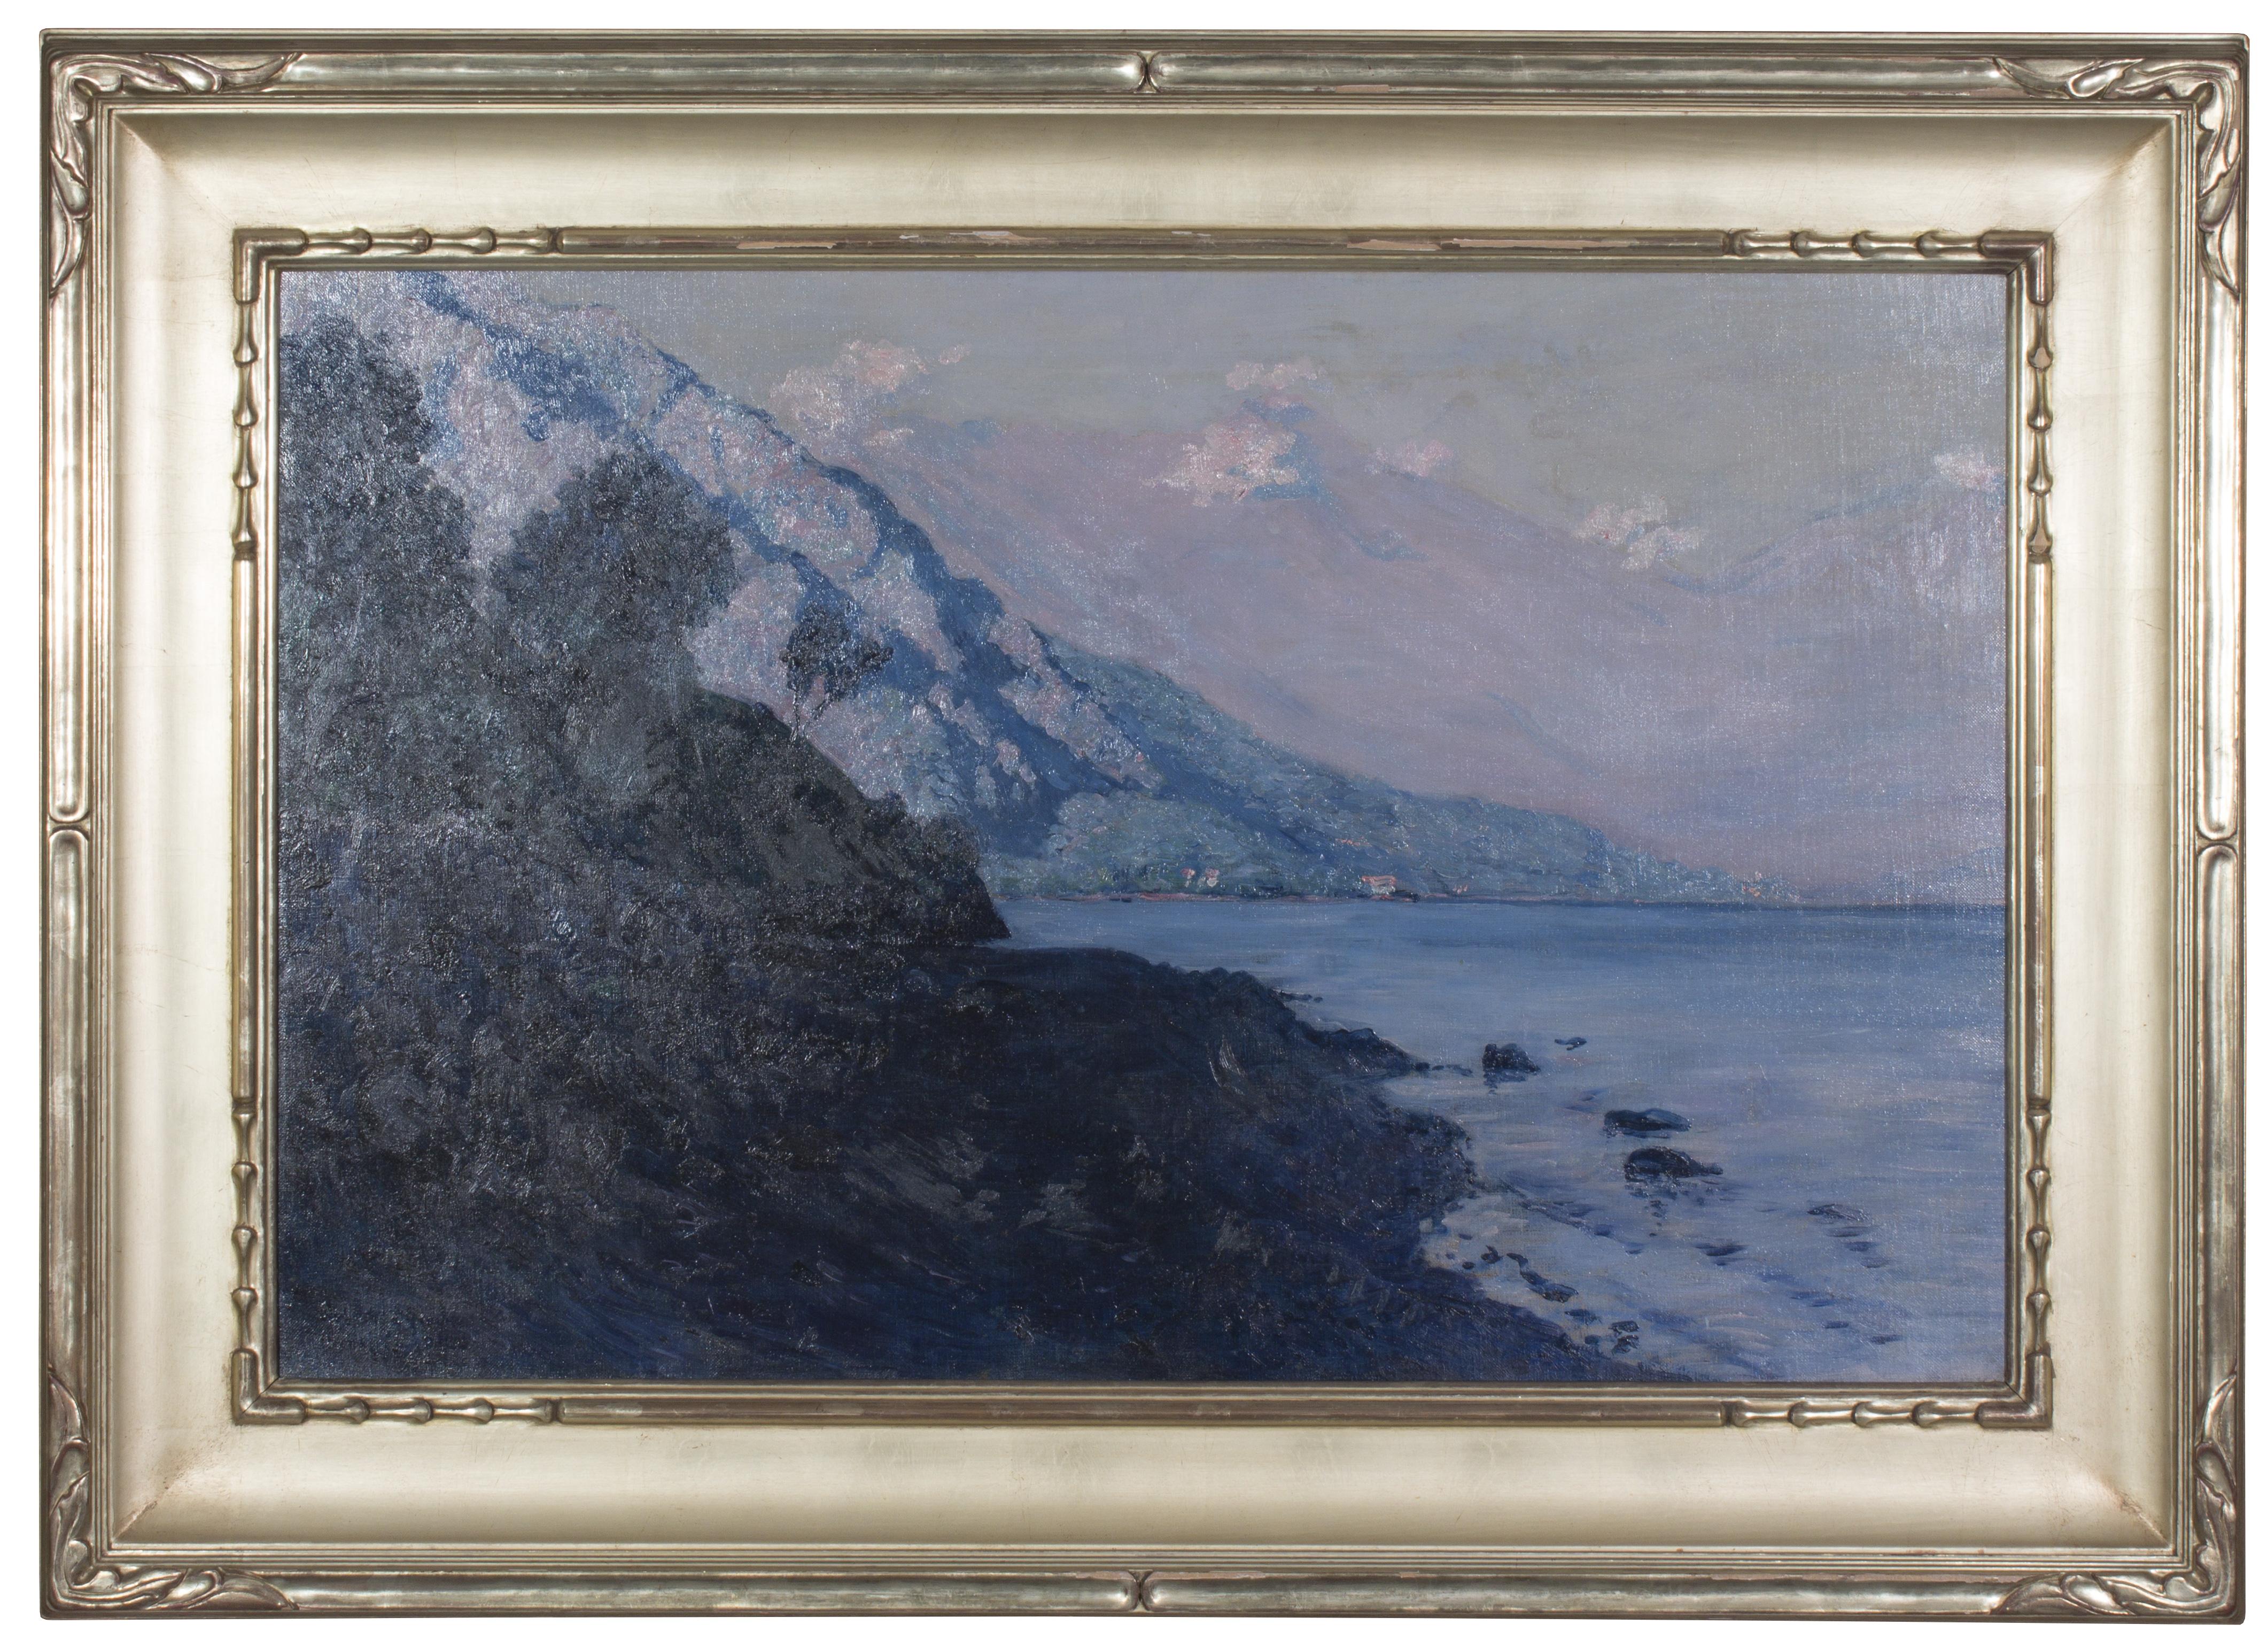 Robert Gauley Landscape Painting – Como, Italien, in der Nähe von Menaggio – Ölgemälde des irischen Künstlers Gauley